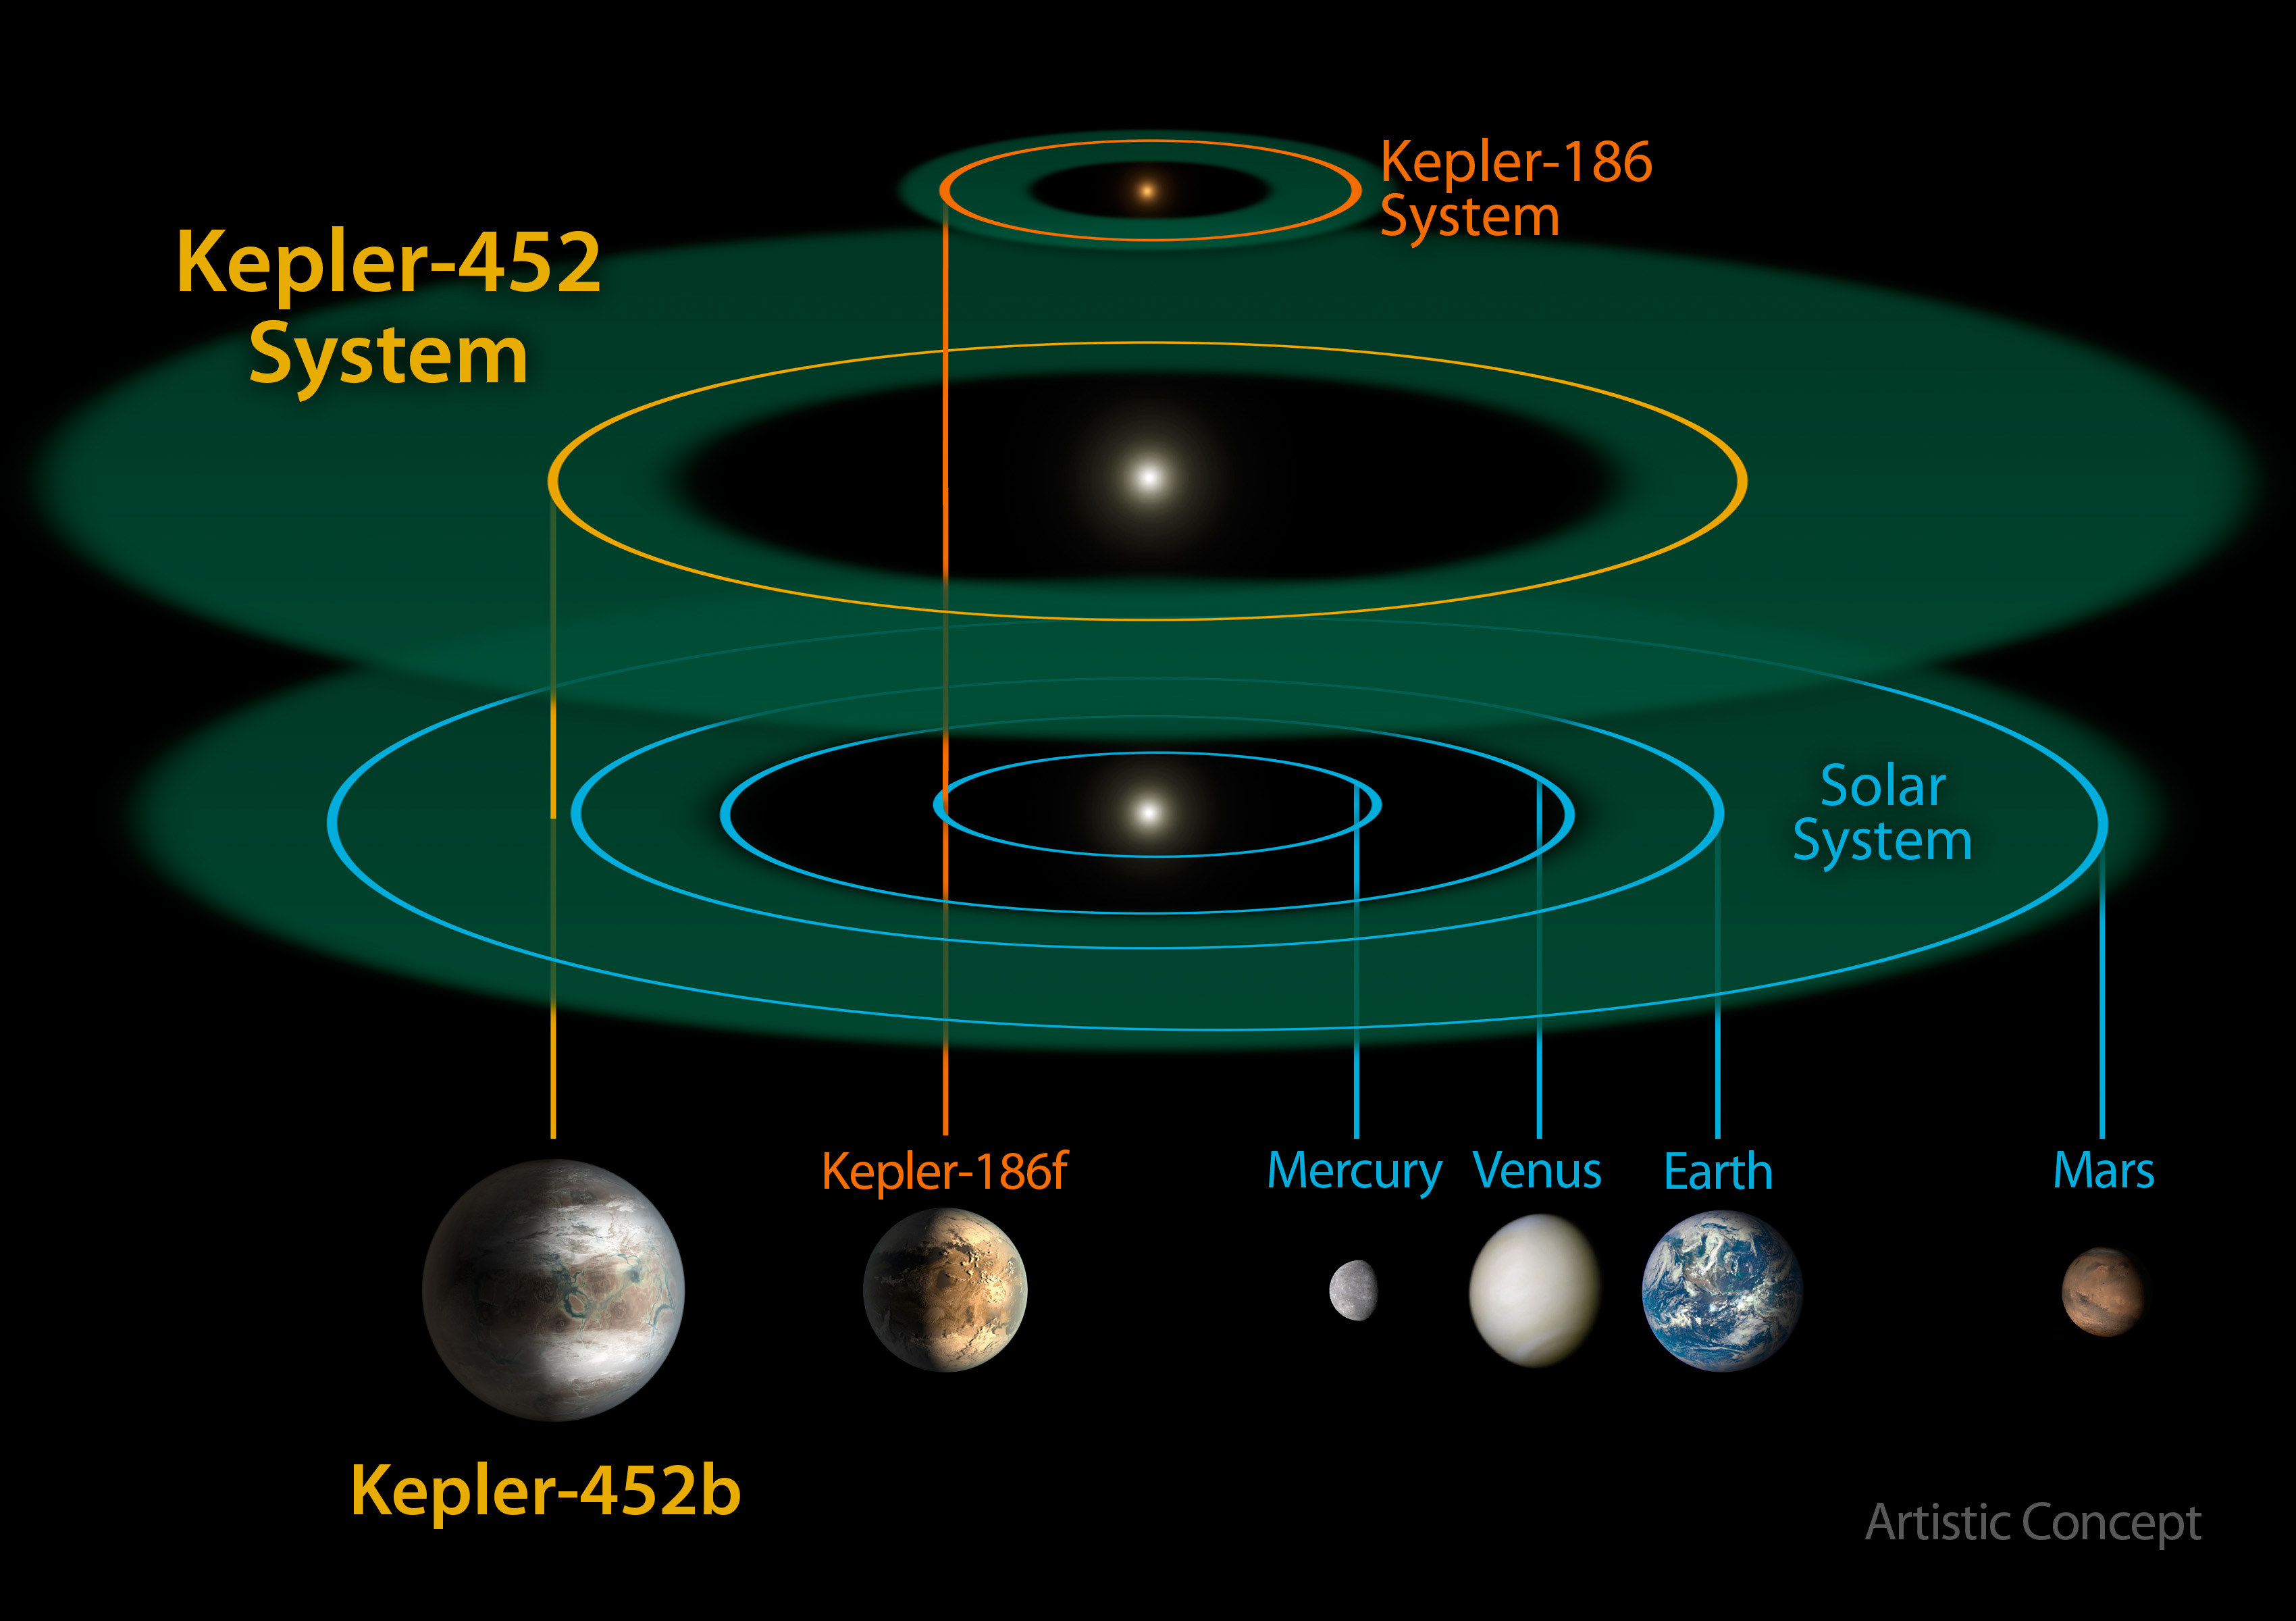 Сравнительные размеры звездных систем Kepler-452, Kepler-186 и Солнечной системы